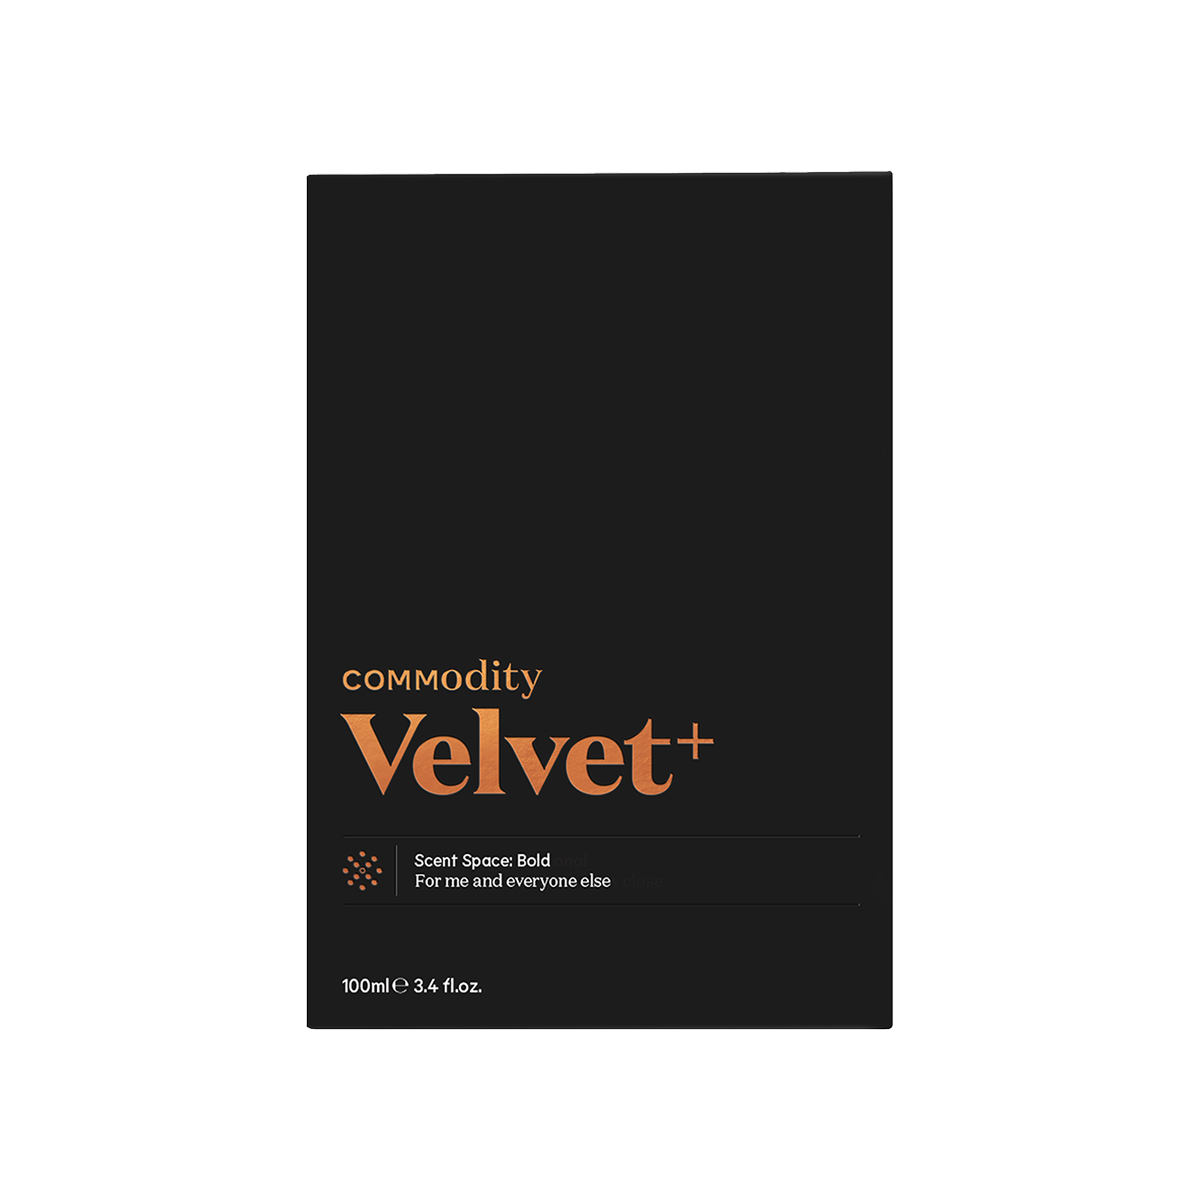 Commodity - Velvet+ Bold